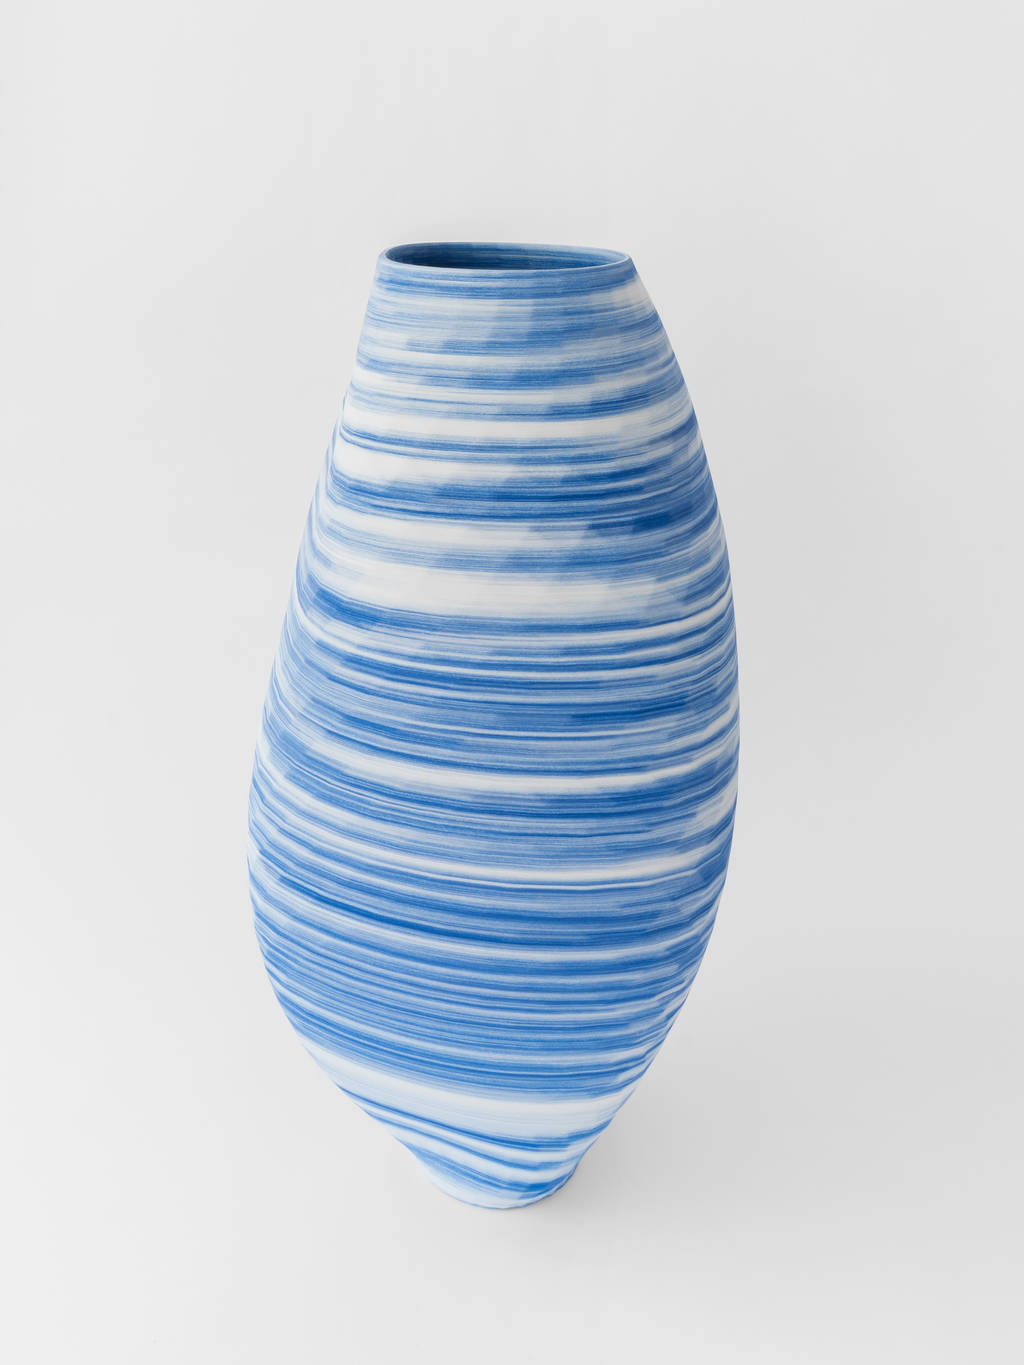 Blue and White ceramic vase